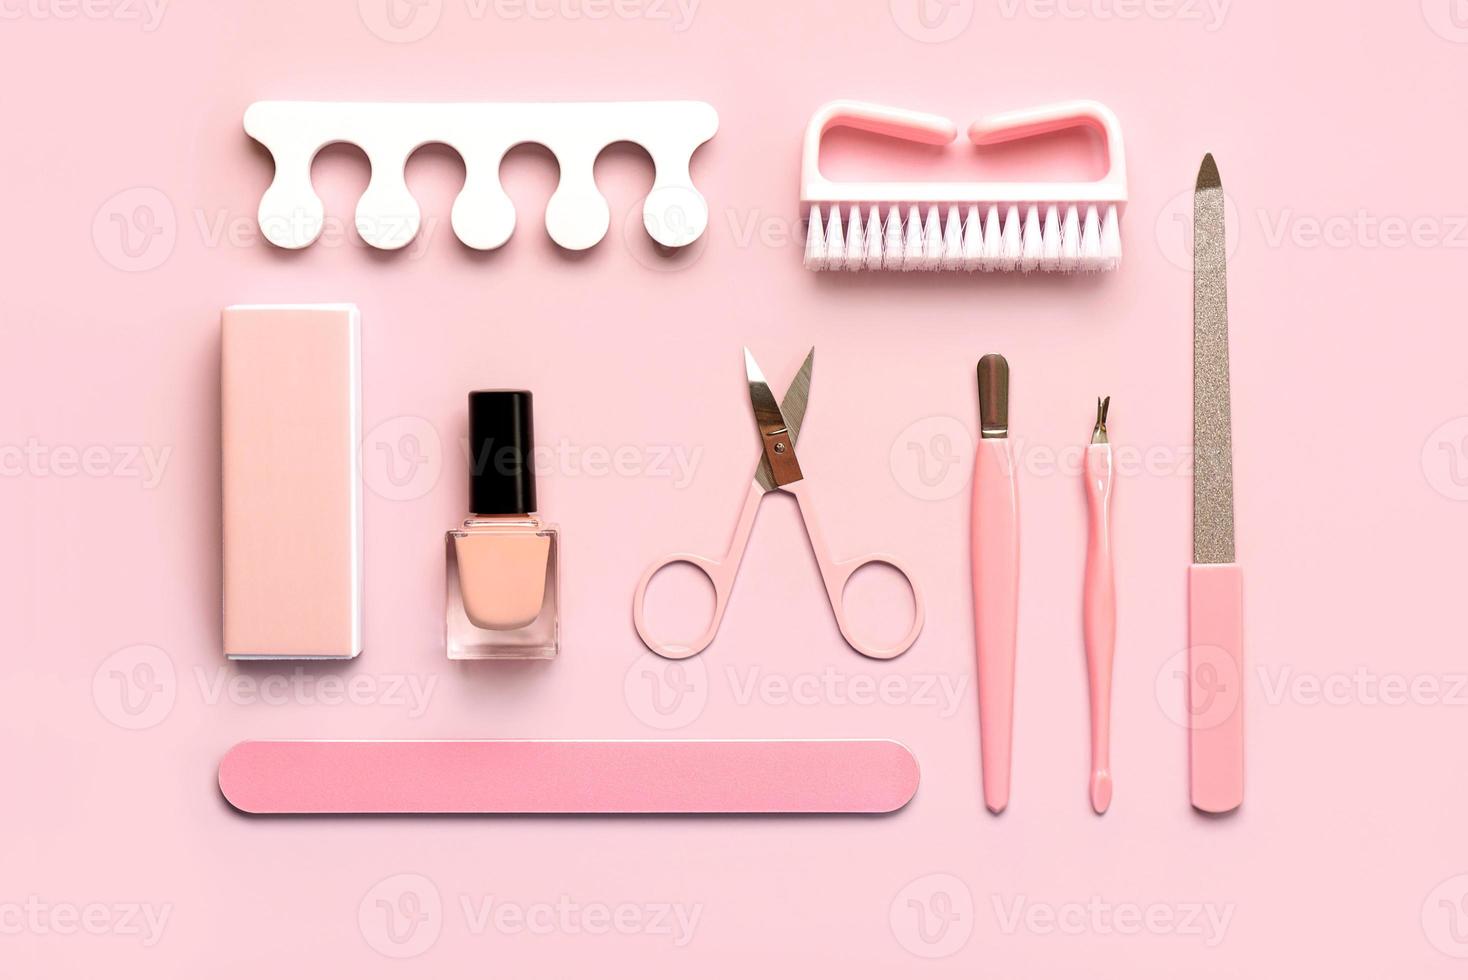 samenstelling met schoonheidsmiddelen en accessoires voor manicure of pedicure. manicure en pedicure concept foto